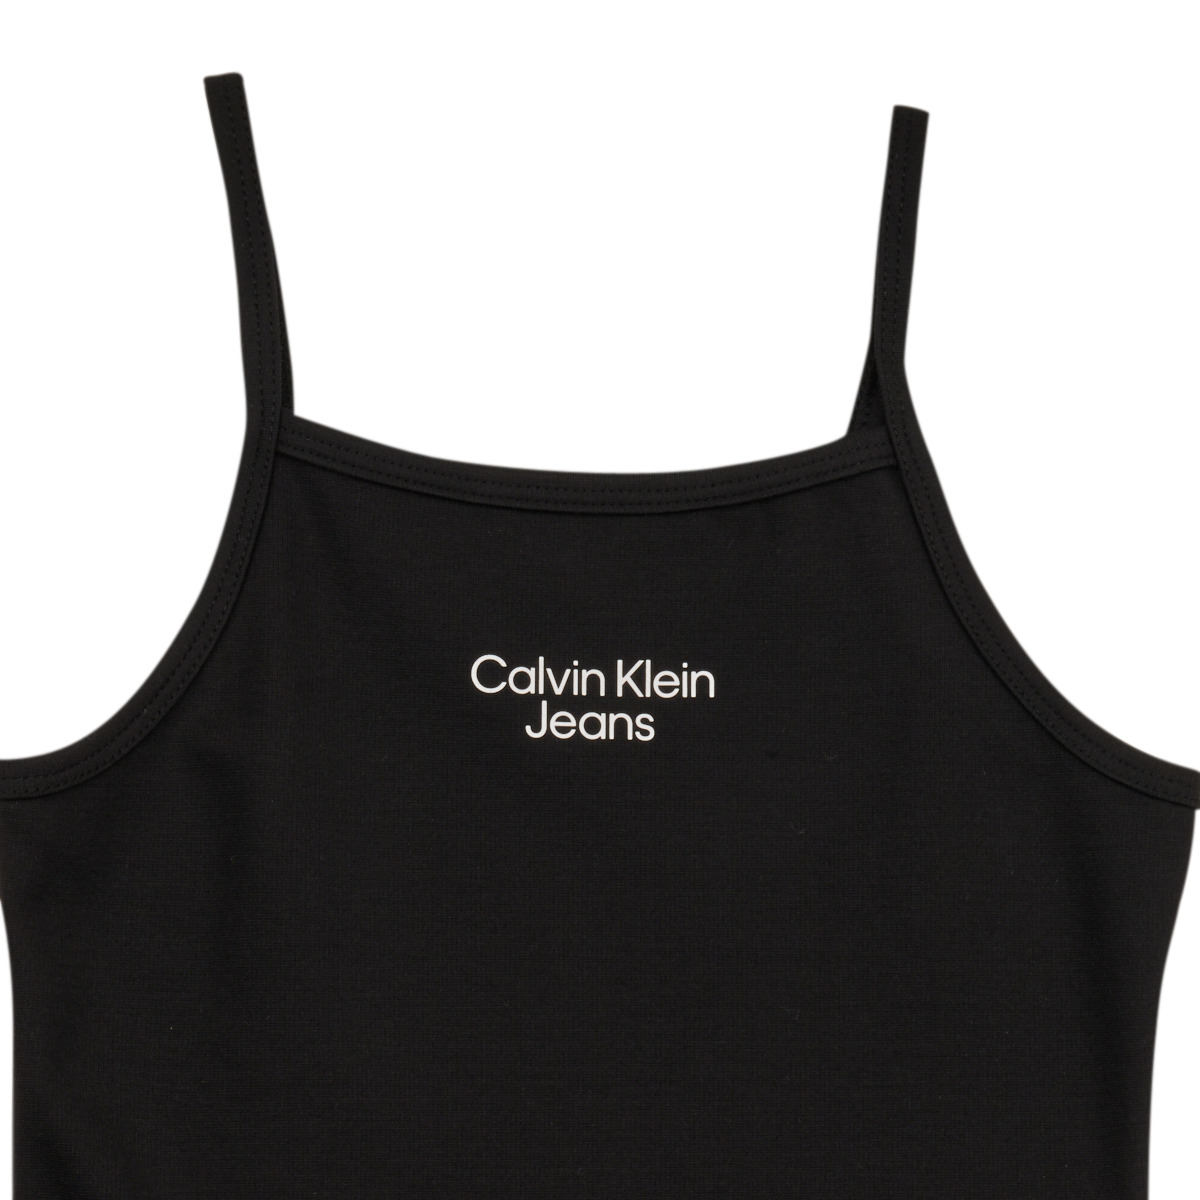 Calvin Klein Jeans Noir STACK LOGO PUNTO STRAP jS3z5iI5